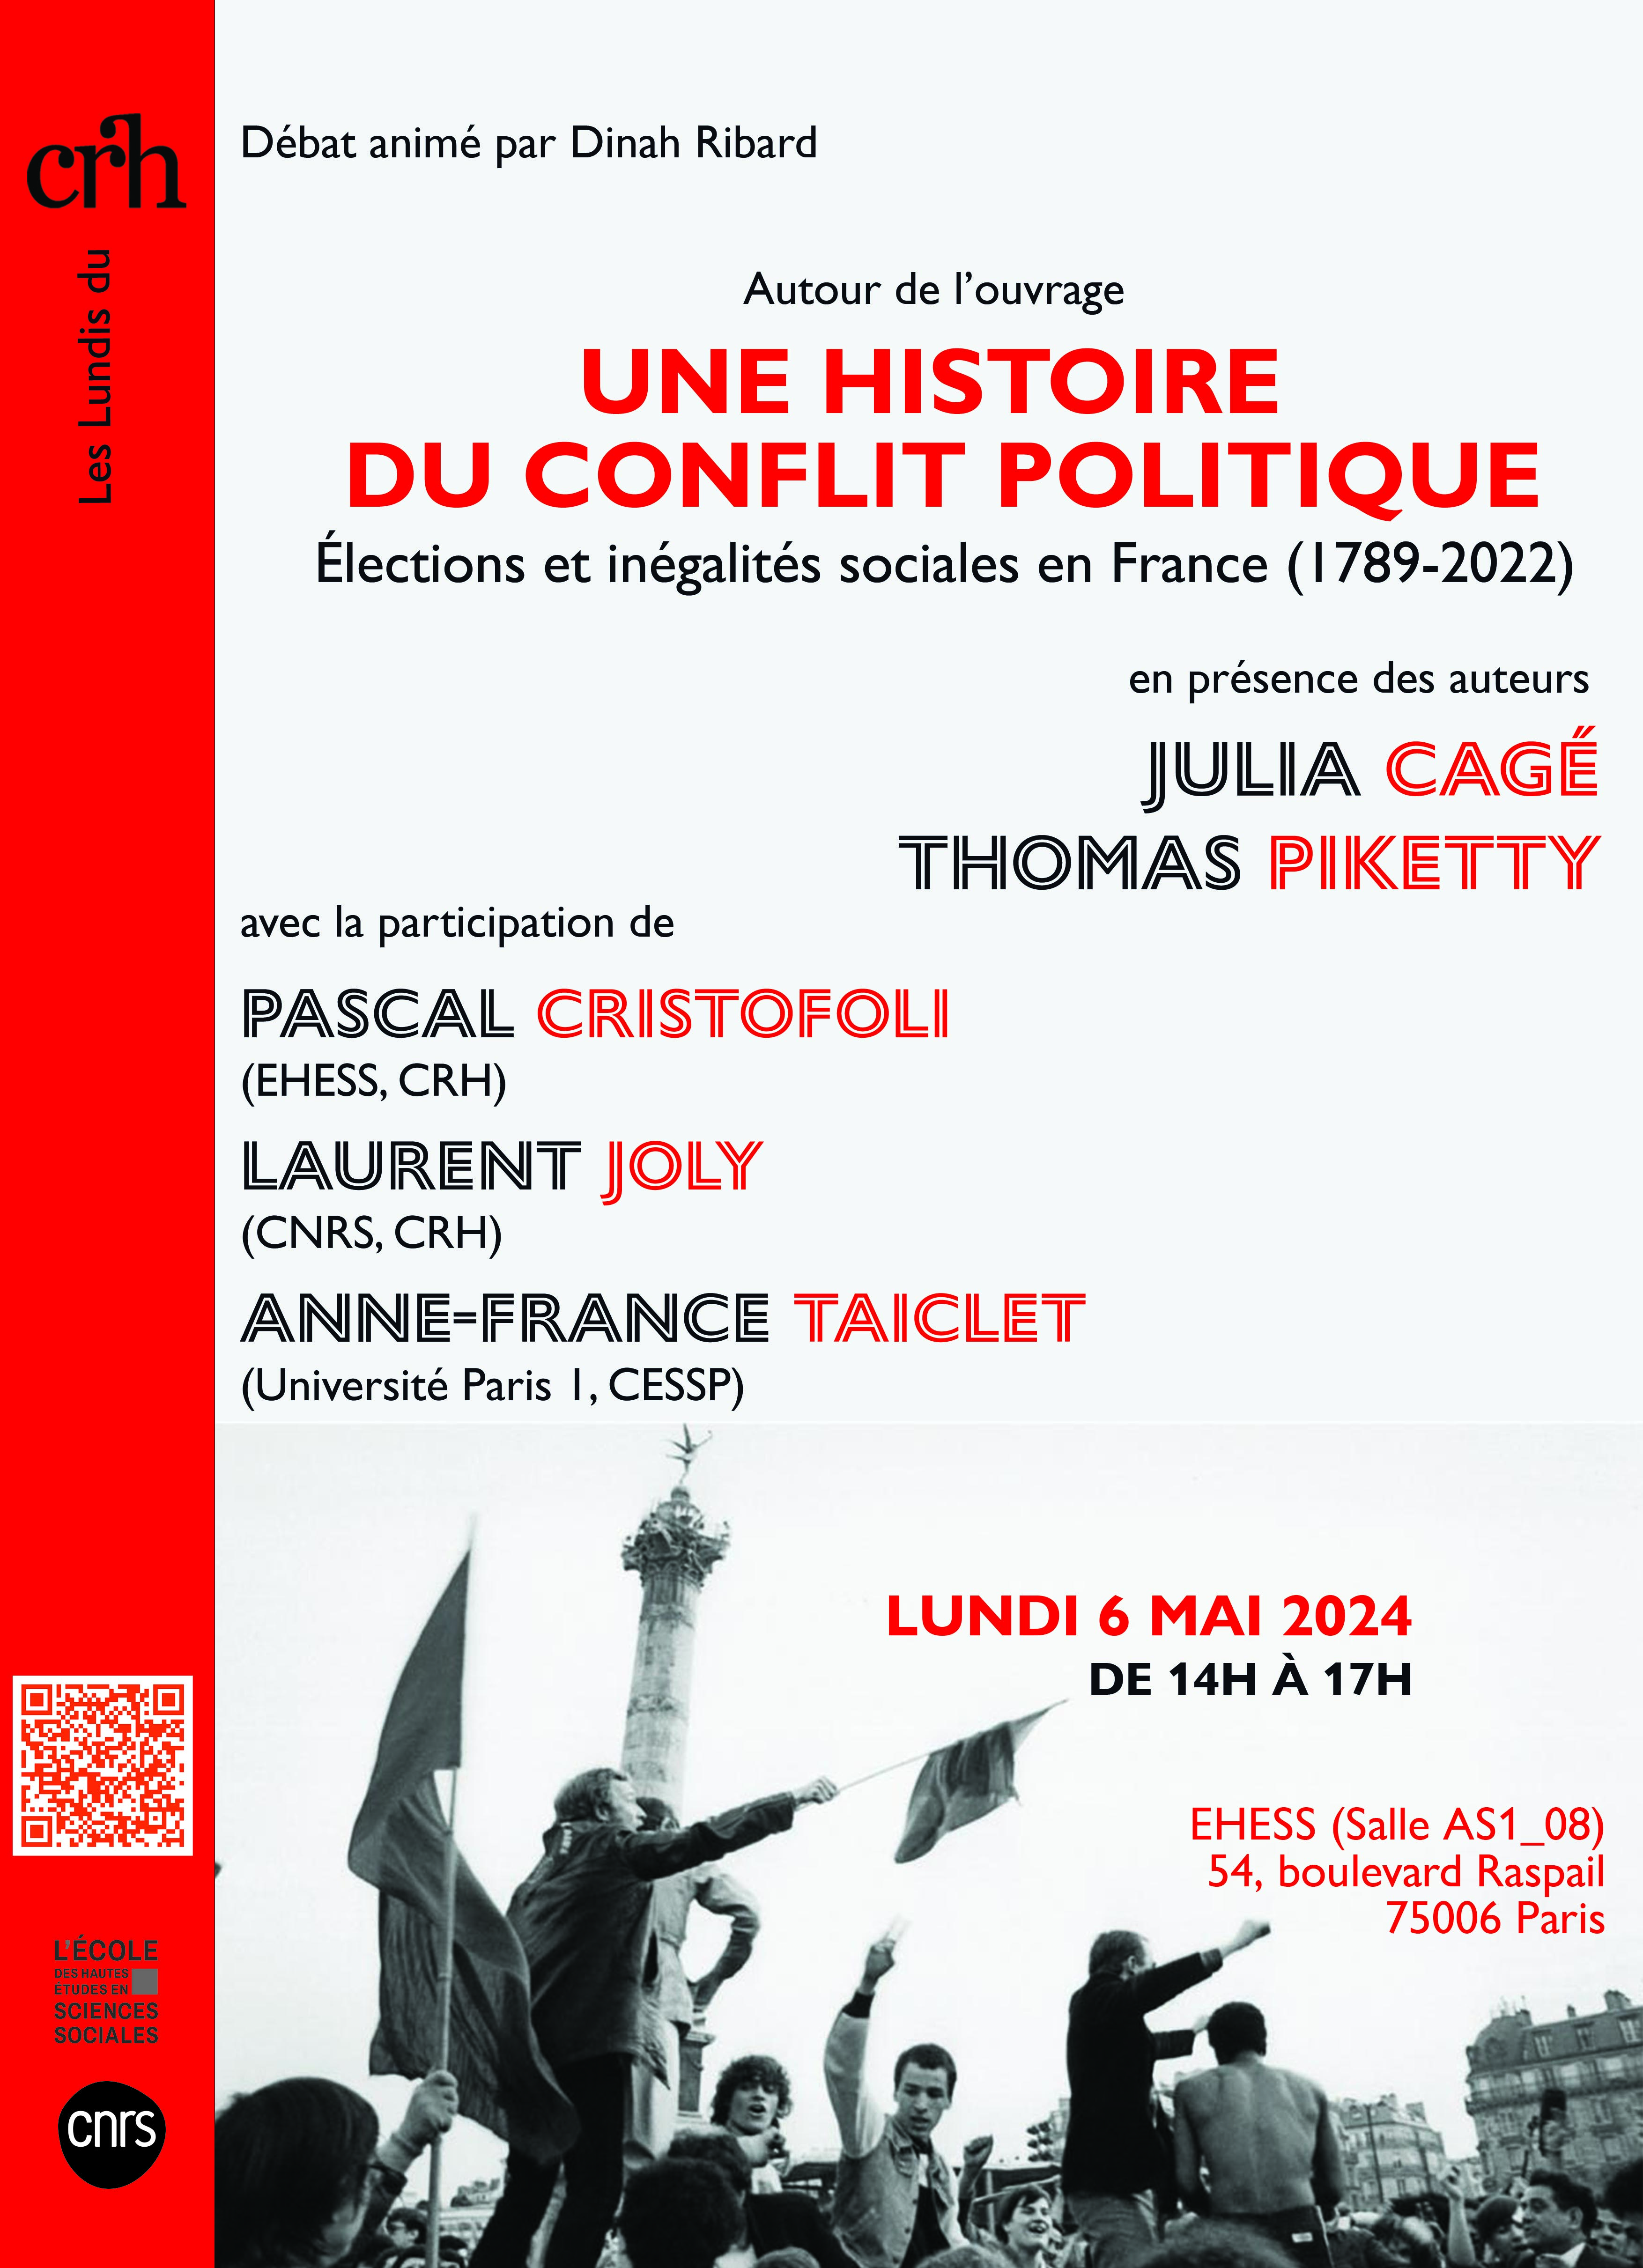 Autour de l'ouvrage de Julia Cagé et Thomas Piketty, Une histoire du conflit politique Elections et inégalités sociales en France, 1789-2022